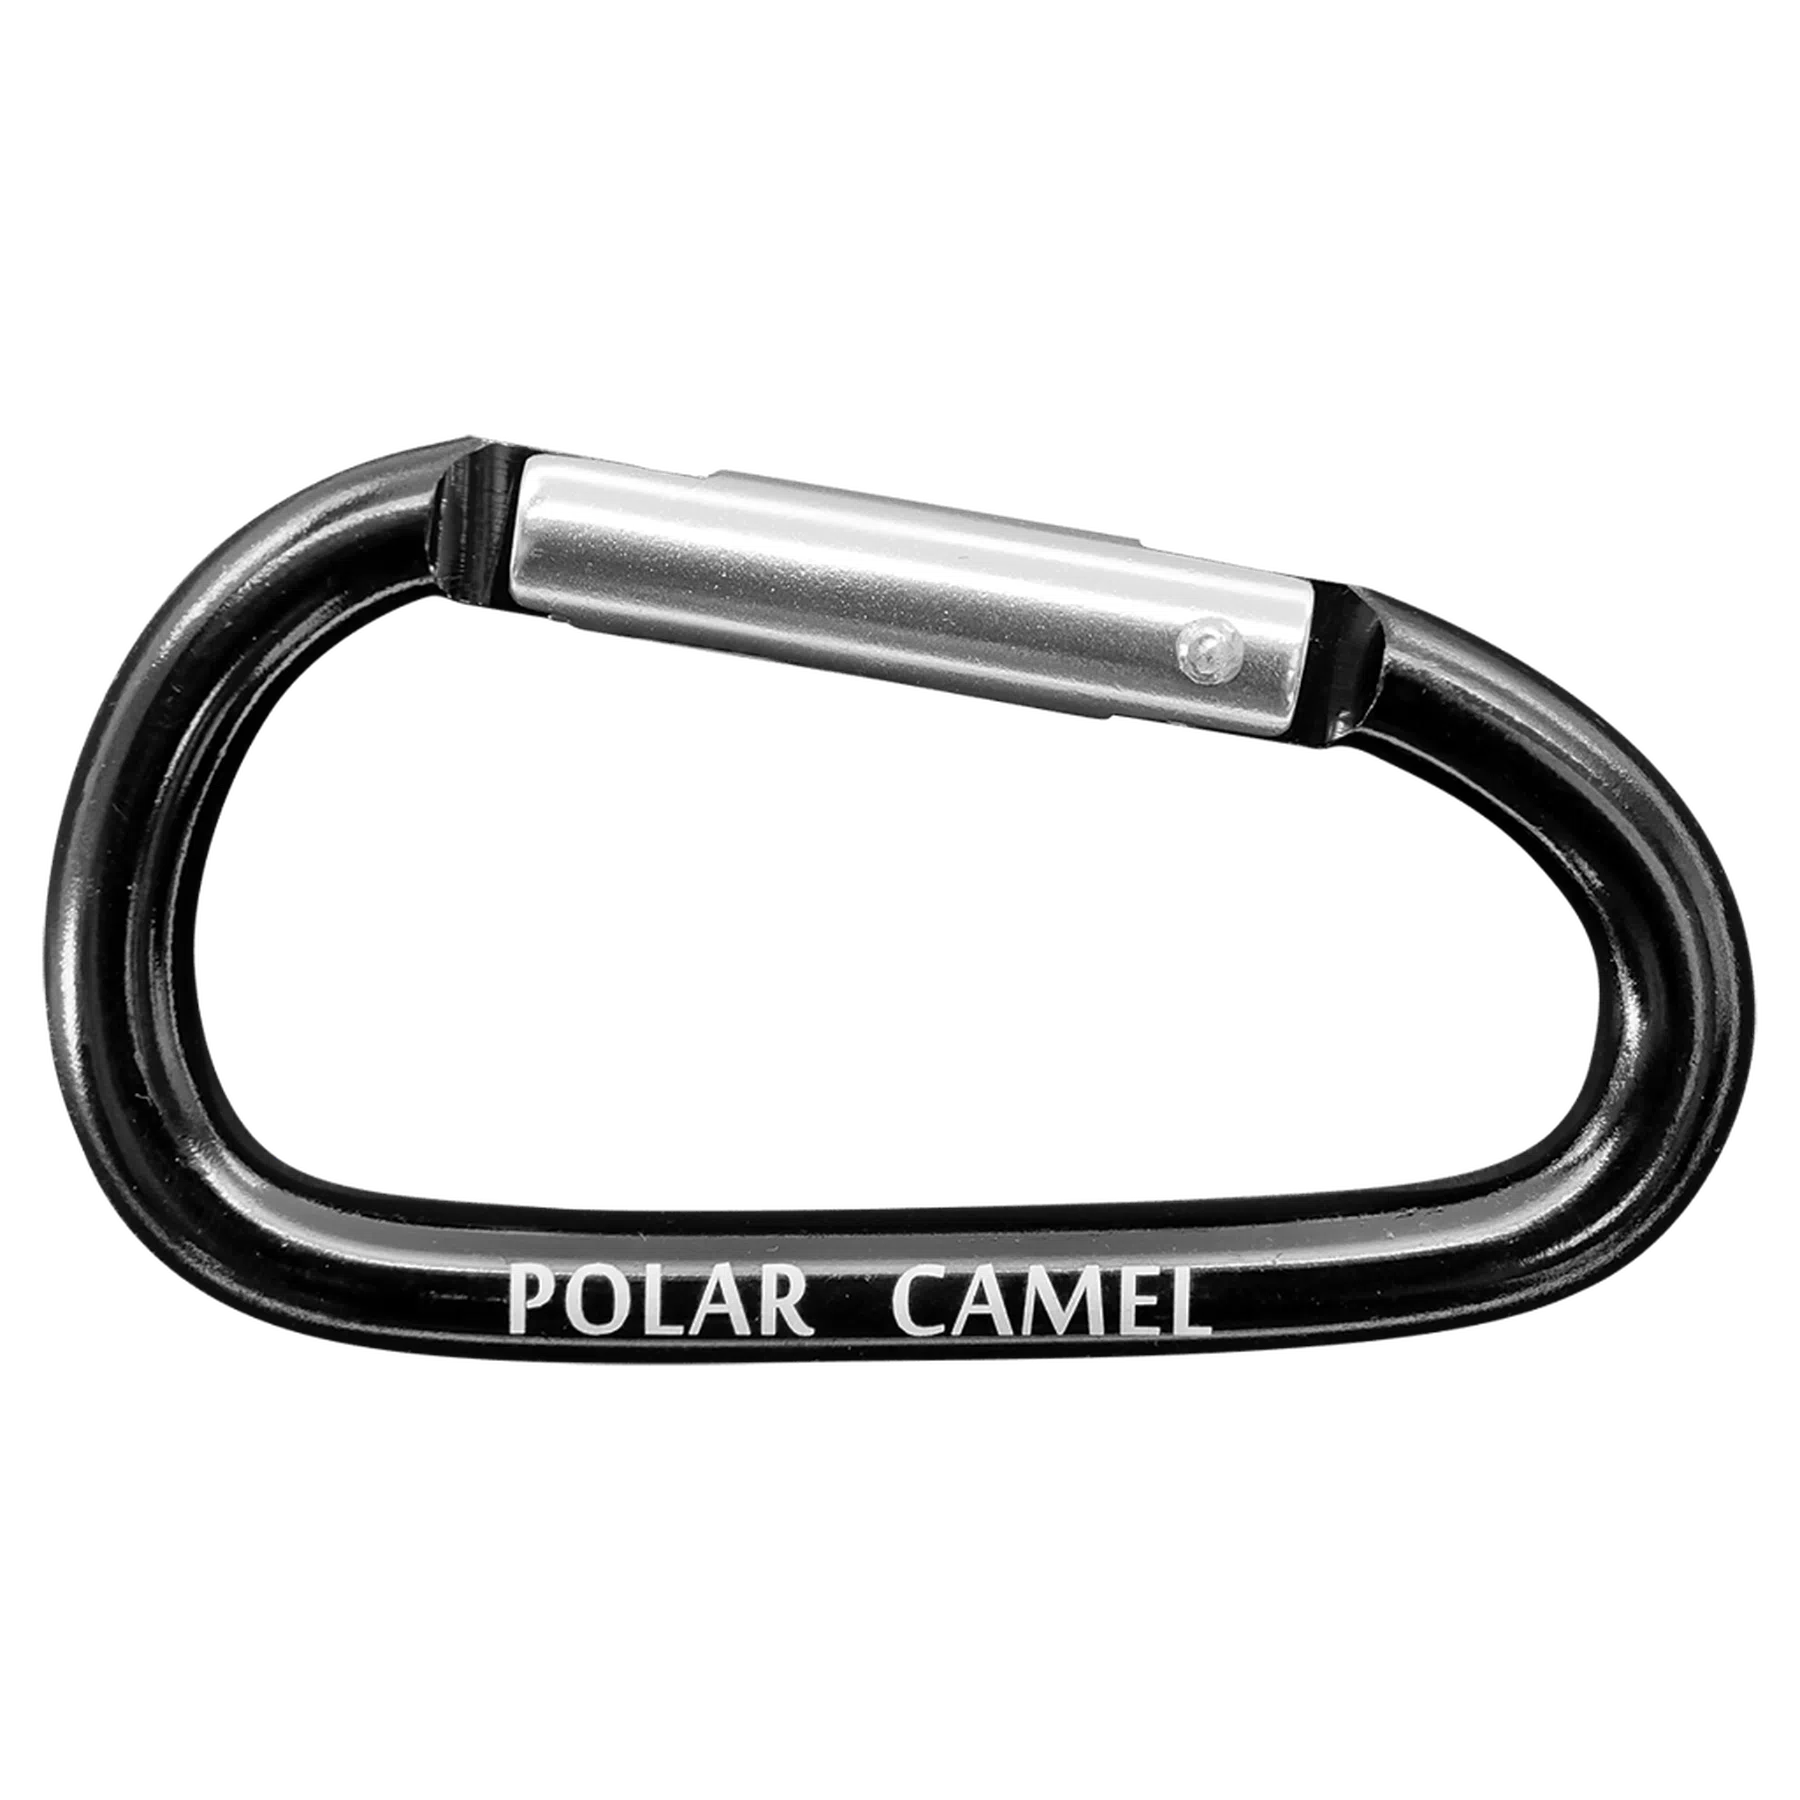 Polar Camel Water Bottle Carabiner (Bottle Holder)